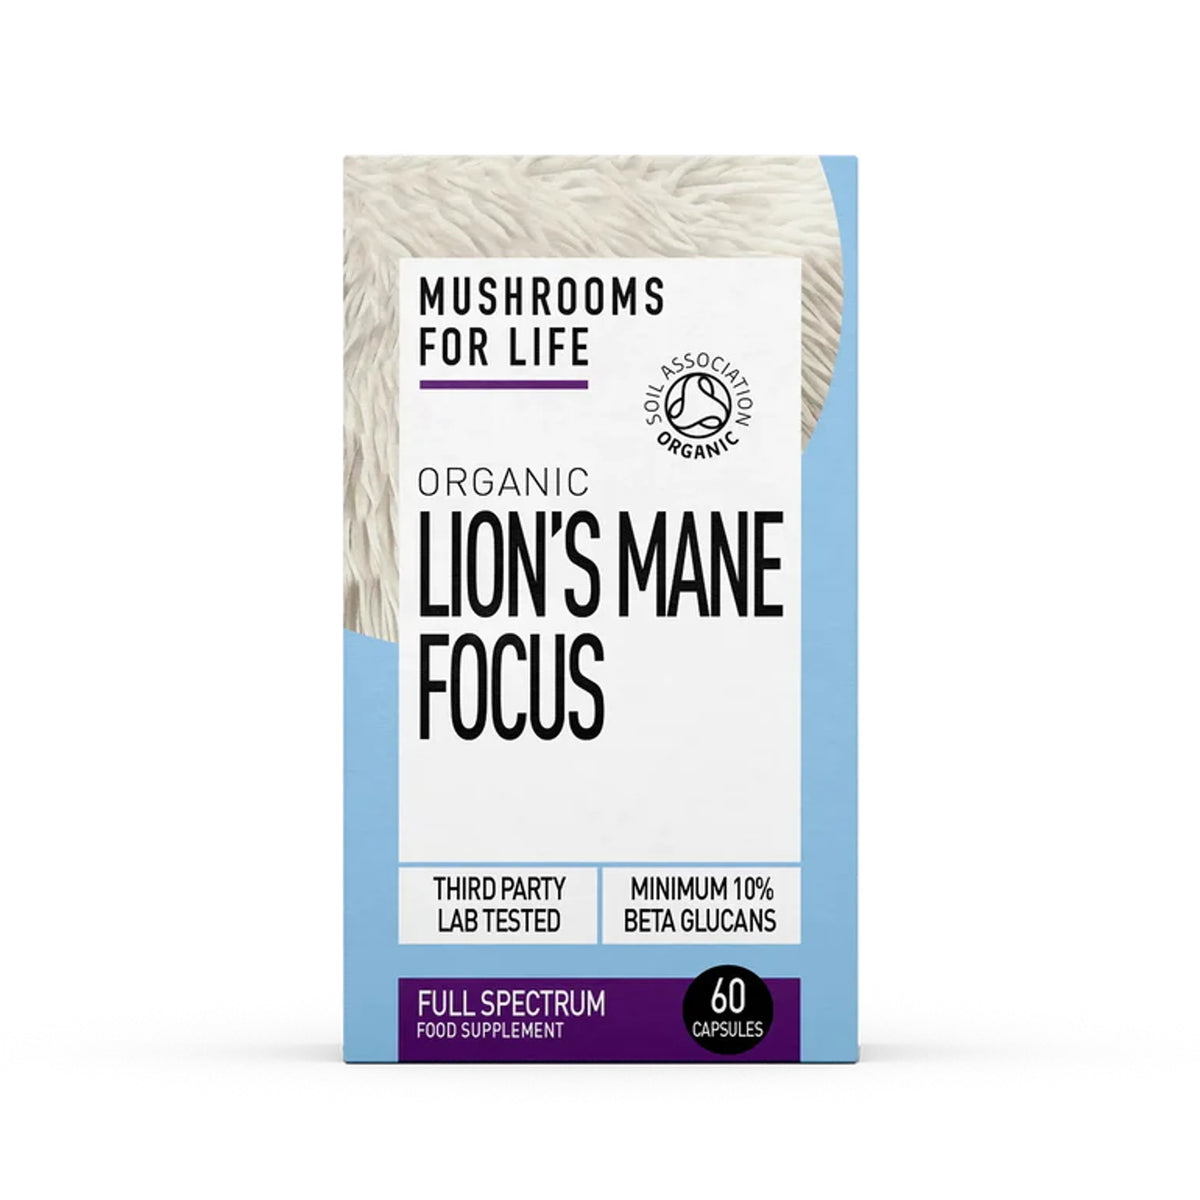 Mushrooms For Life Organic Lion’s Mane Focus 60 capsules 36g